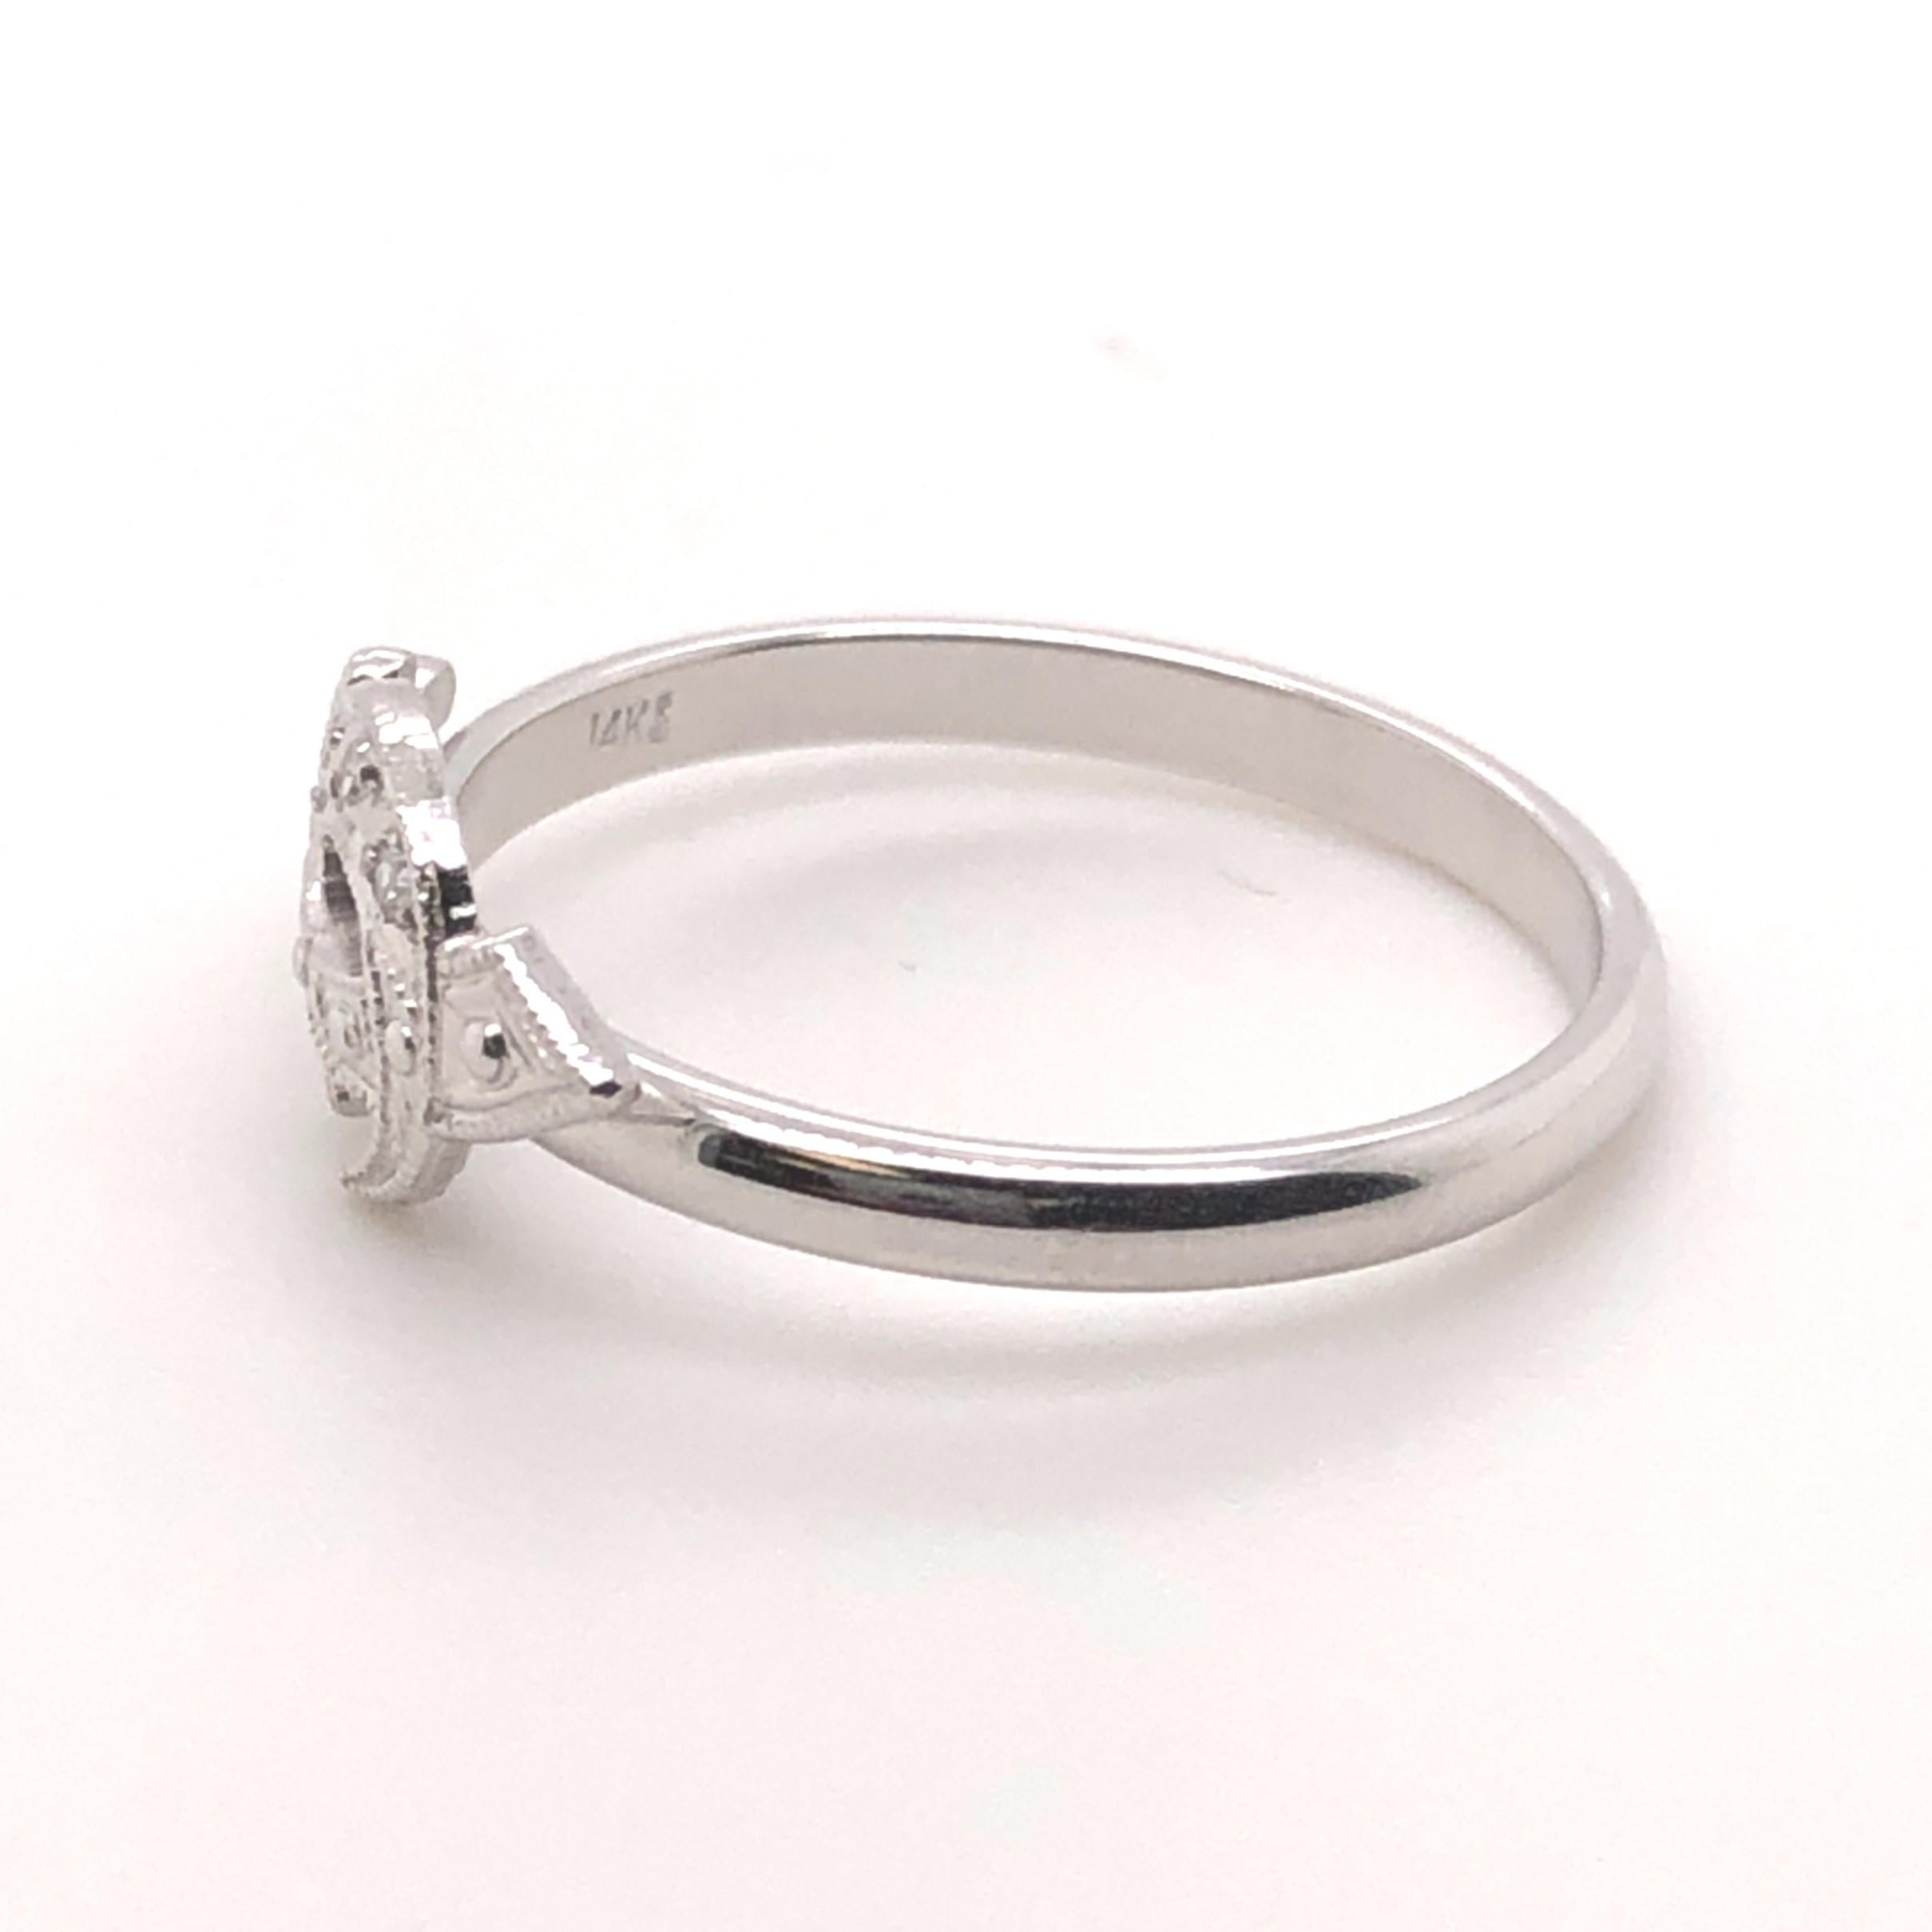 14 Karat Weißgold Ring mit 0,03 Karat Gesamtgewicht J Farbe SI1 Klarheit Diamanten in der Form eines Krummsäbels gesetzt.

Der Ring hat die Größe 7.

Der Ring war ursprünglich eine Stecknadel, die zu einem Ring umgebaut wurde.